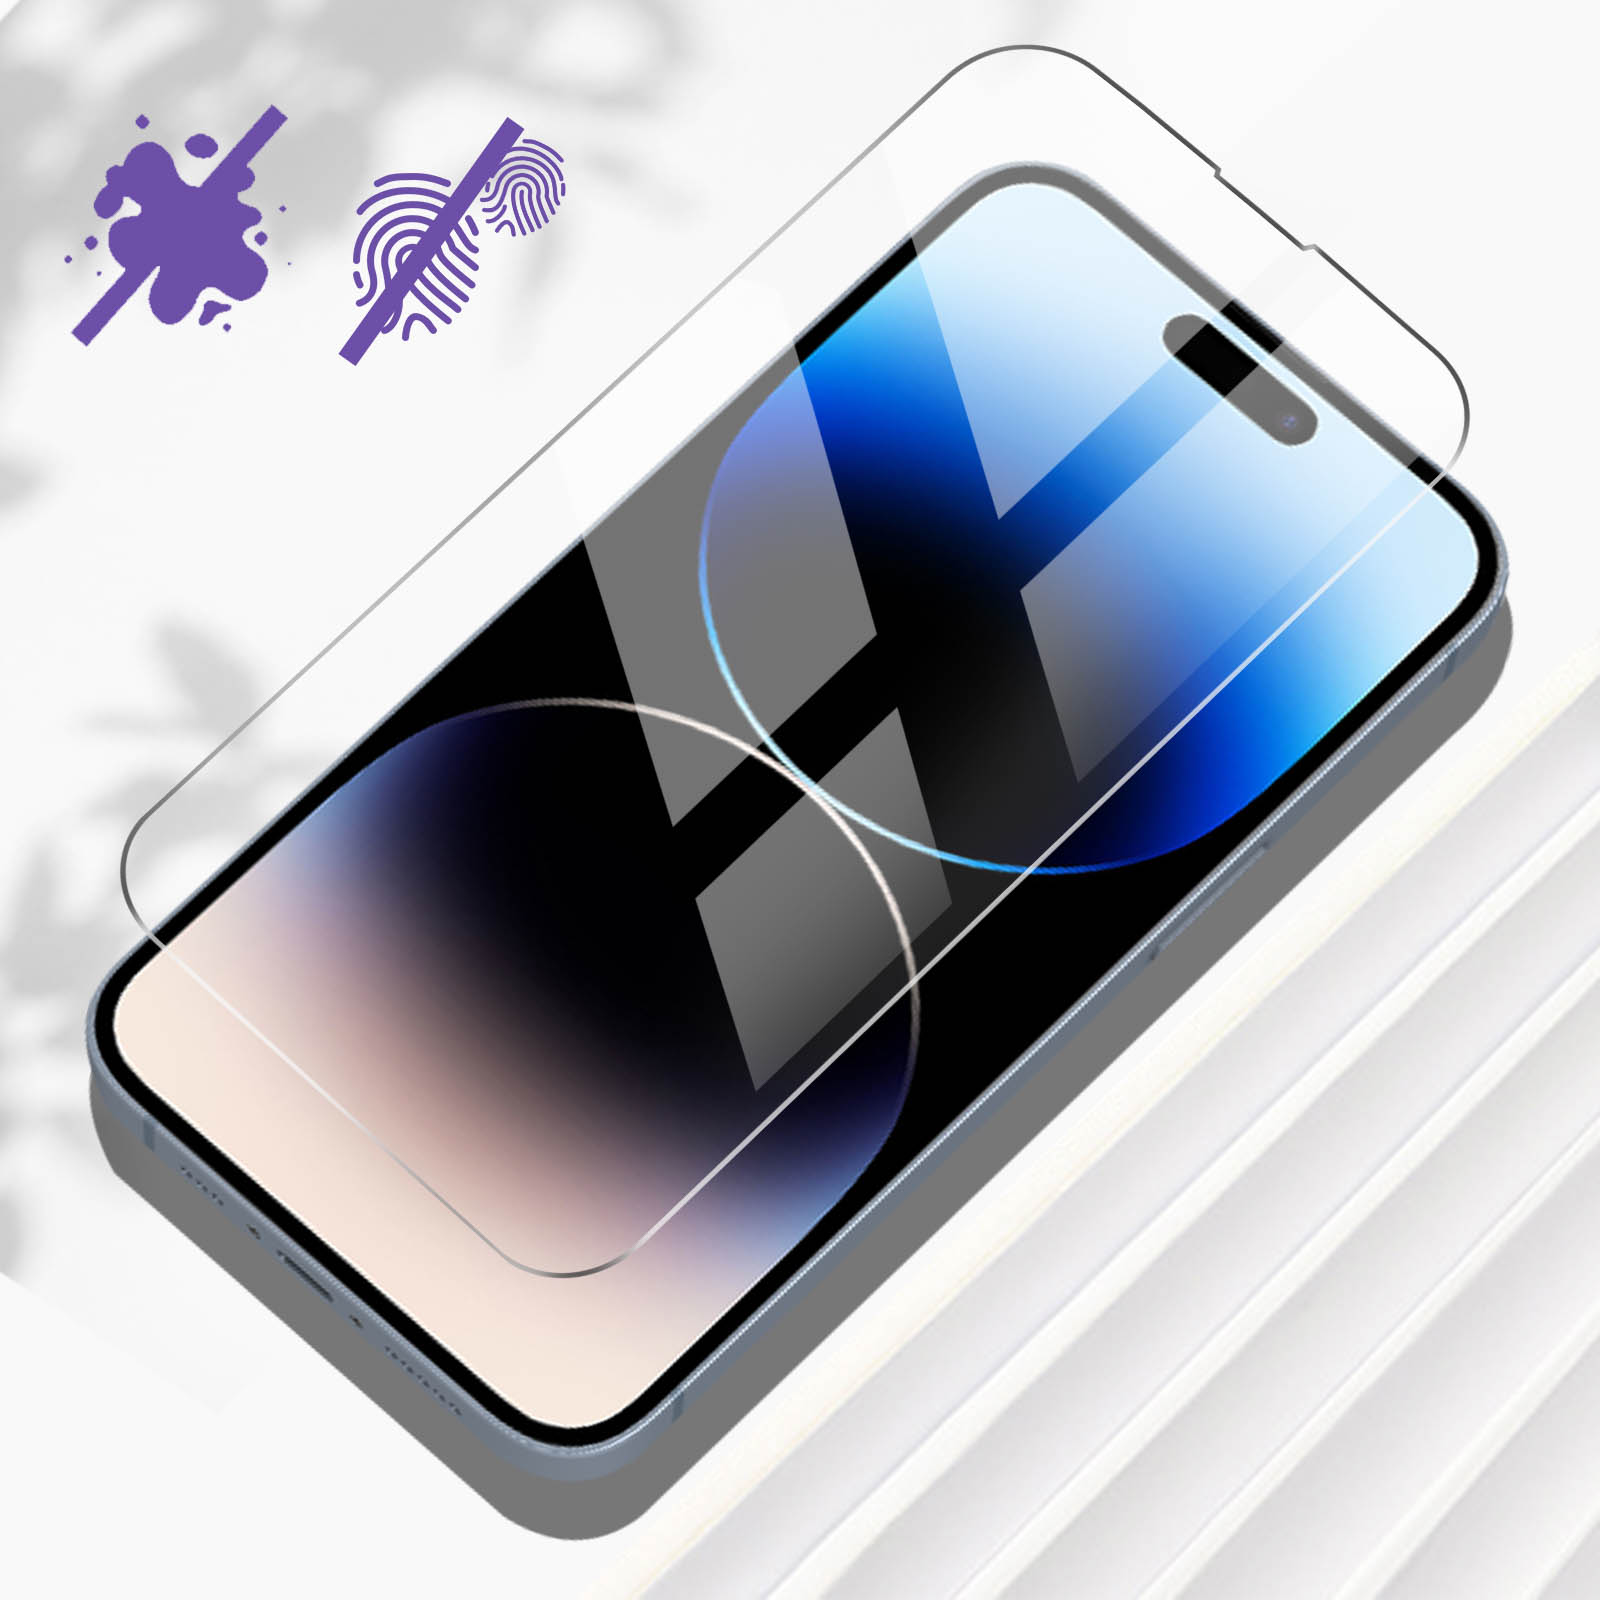 Pro iPhone Apple Härtegrad Glas-Folien(für 9H Max) 14 AVIZAR